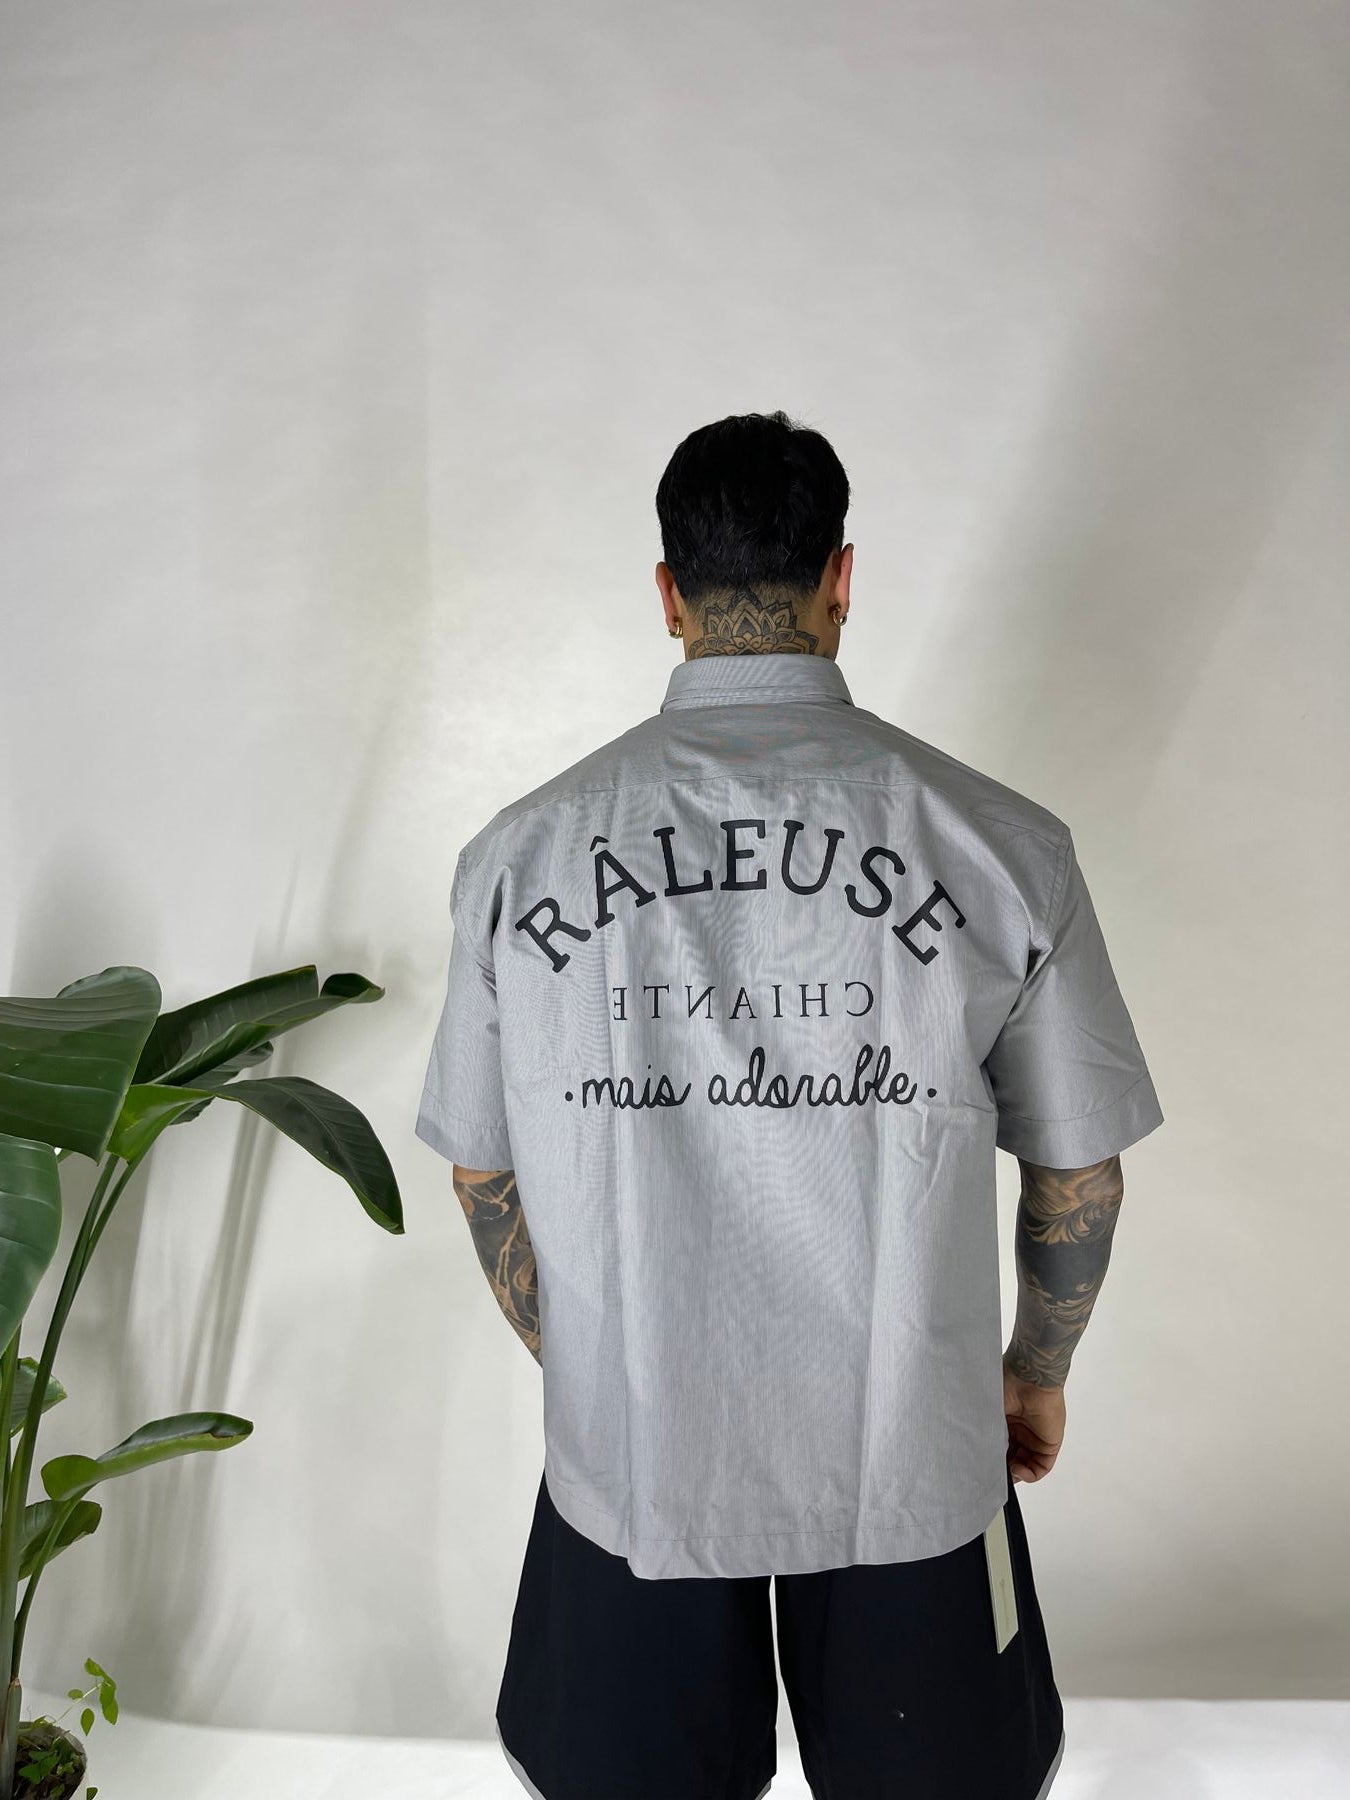 Camicia Raleuse - Camicie - Gavensemble